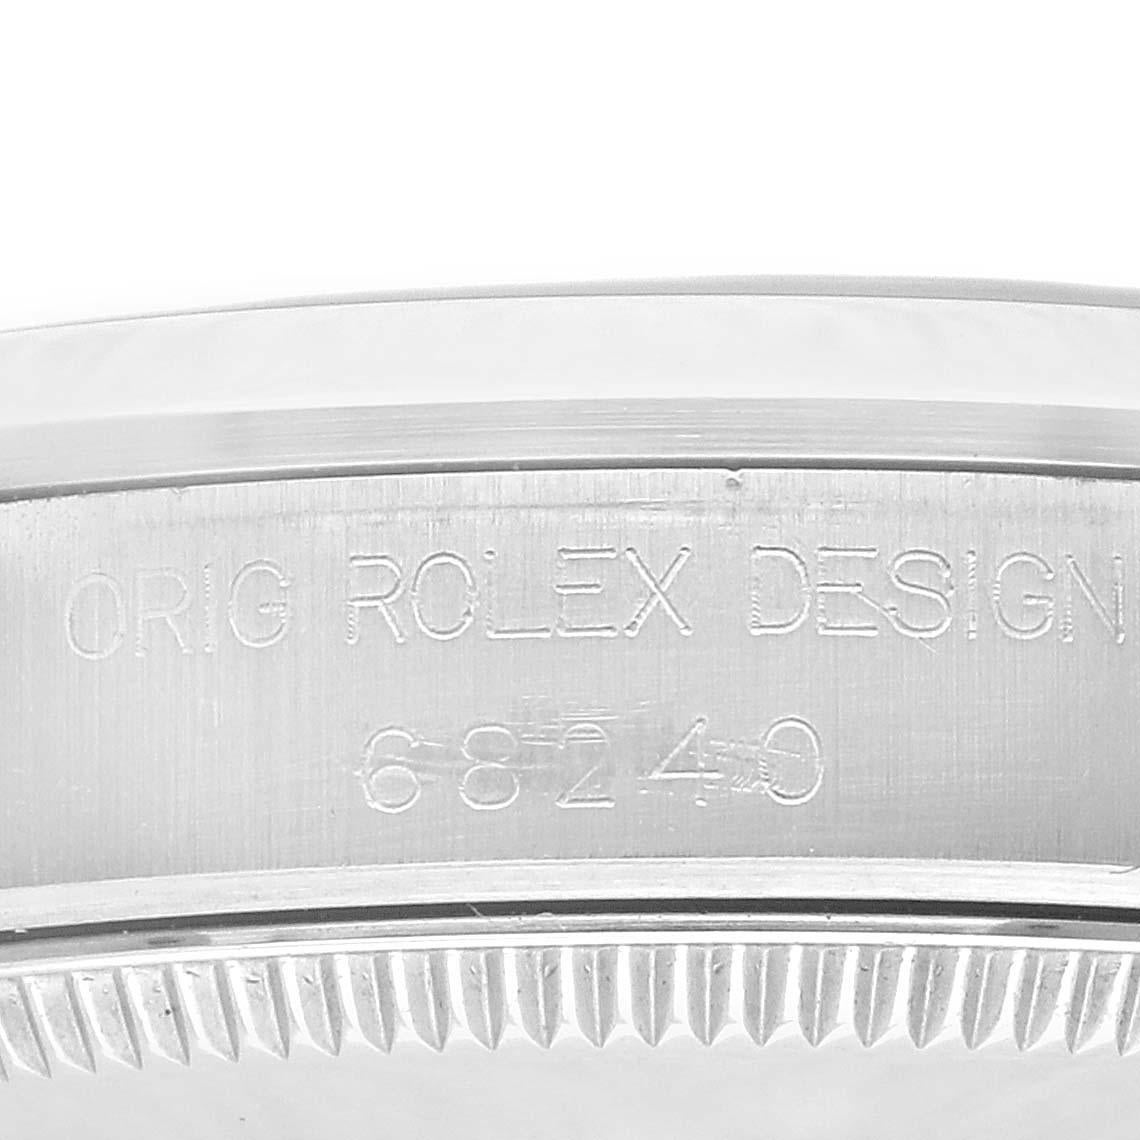 Rolex Midsize Datejust 31 Grey Anniversary Dial Steel Ladies Watch 68240. Mouvement à remontage automatique certifié officiellement chronomètre. Boîtier oyster en acier inoxydable de 31 mm de diamètre. Logo Rolex sur une couronne. Lunette lisse en